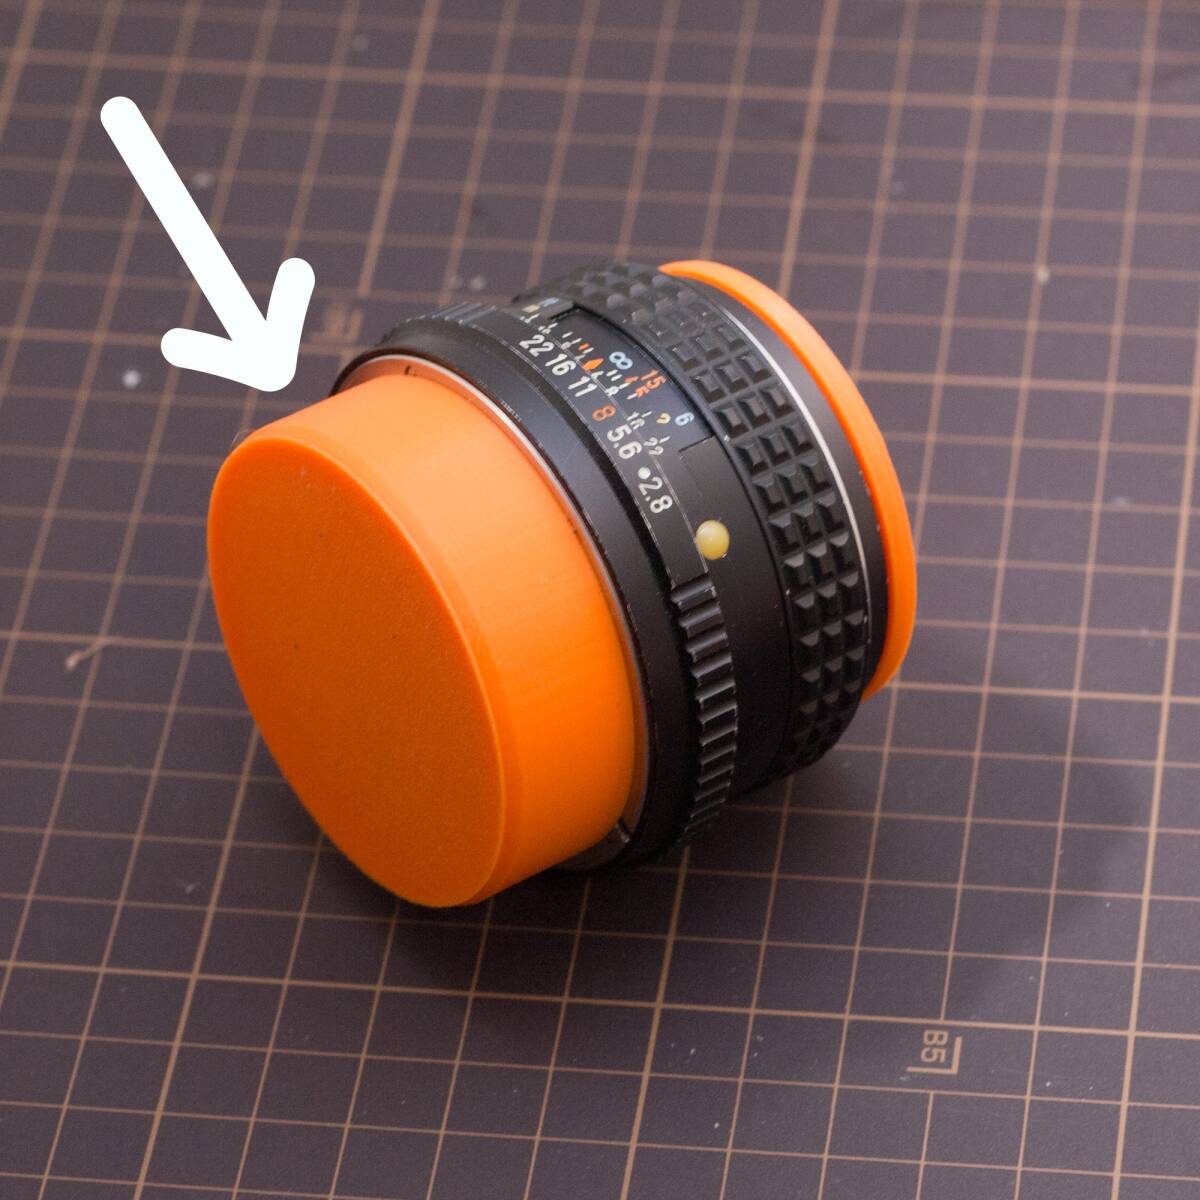 PENTAX K mount for orange color rear cap dust cap 4 piece set 